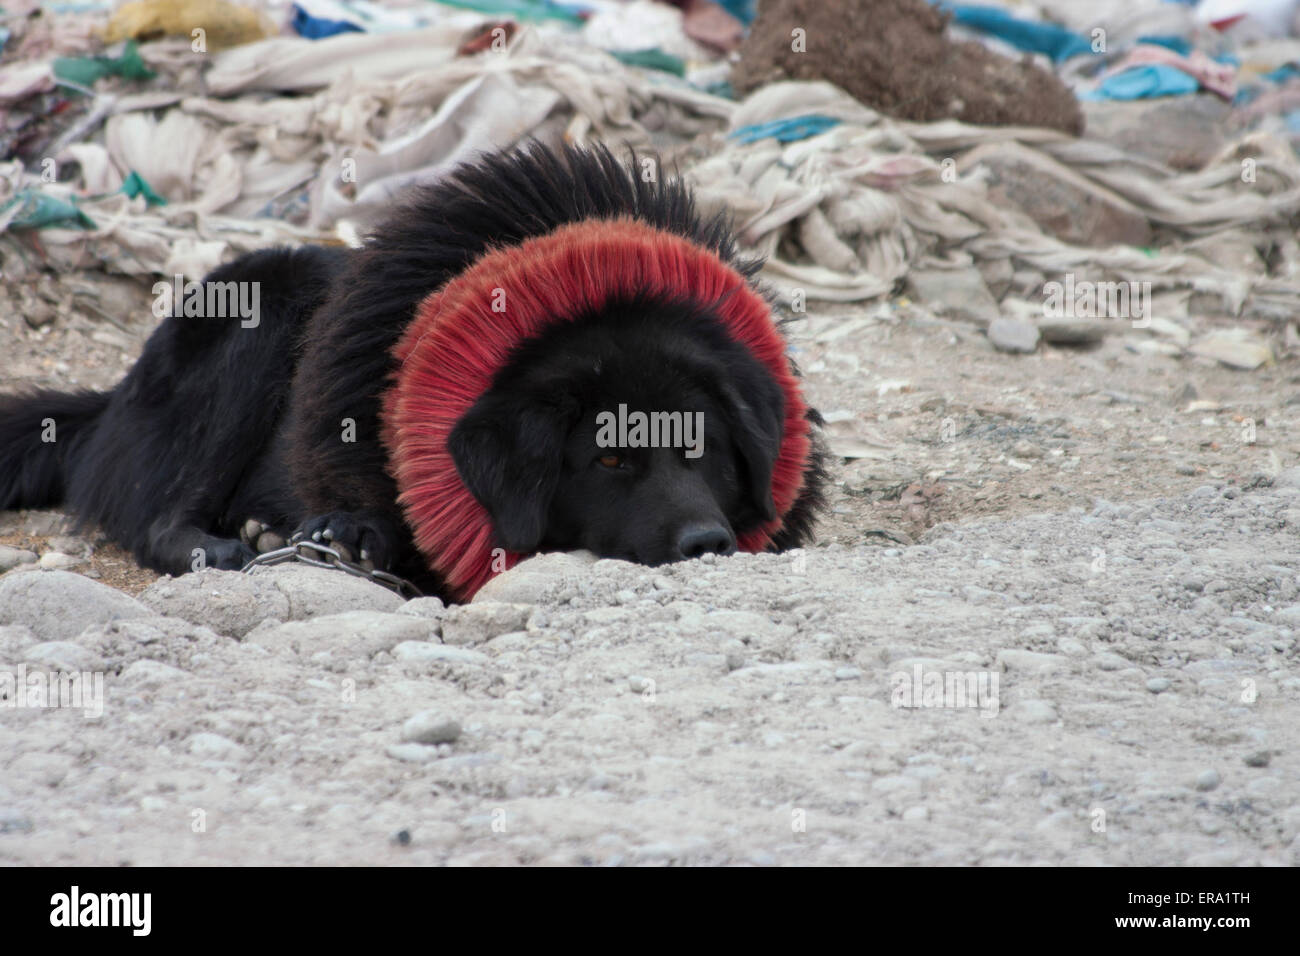 Tibetan Mastiff with Pray flags Stock Photo